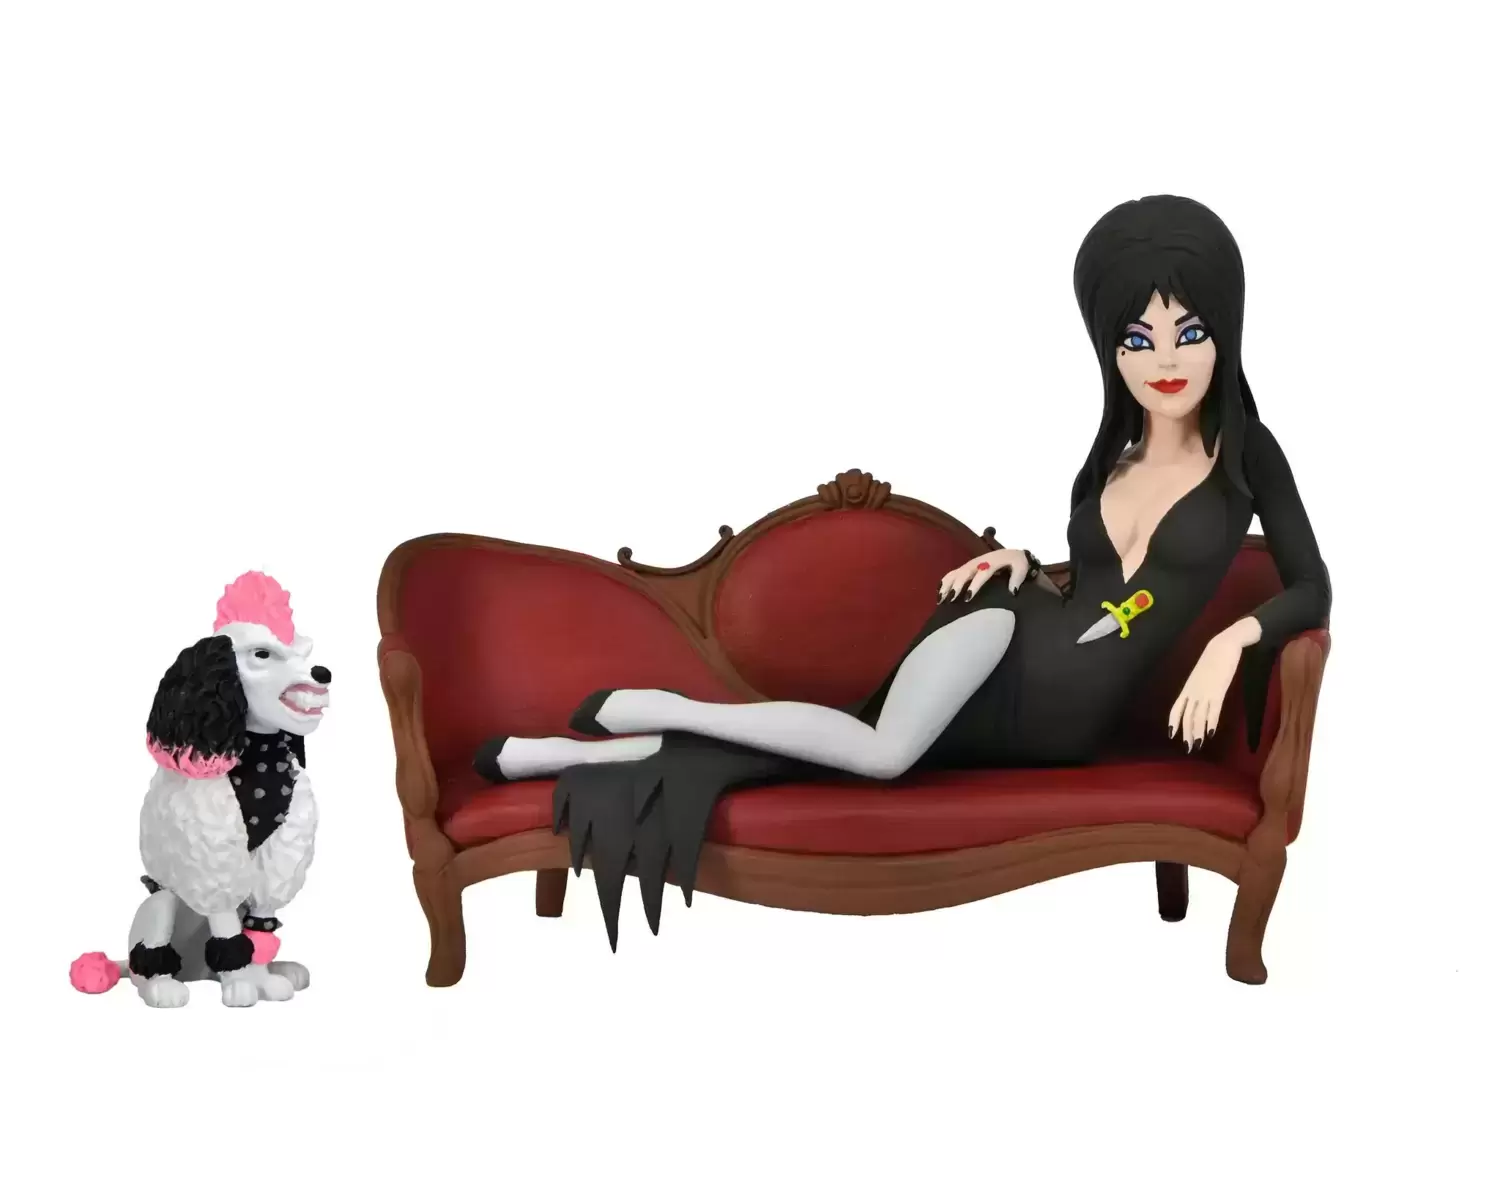 NECA - Toony Terrors - Elvira on Couch Boxed Set